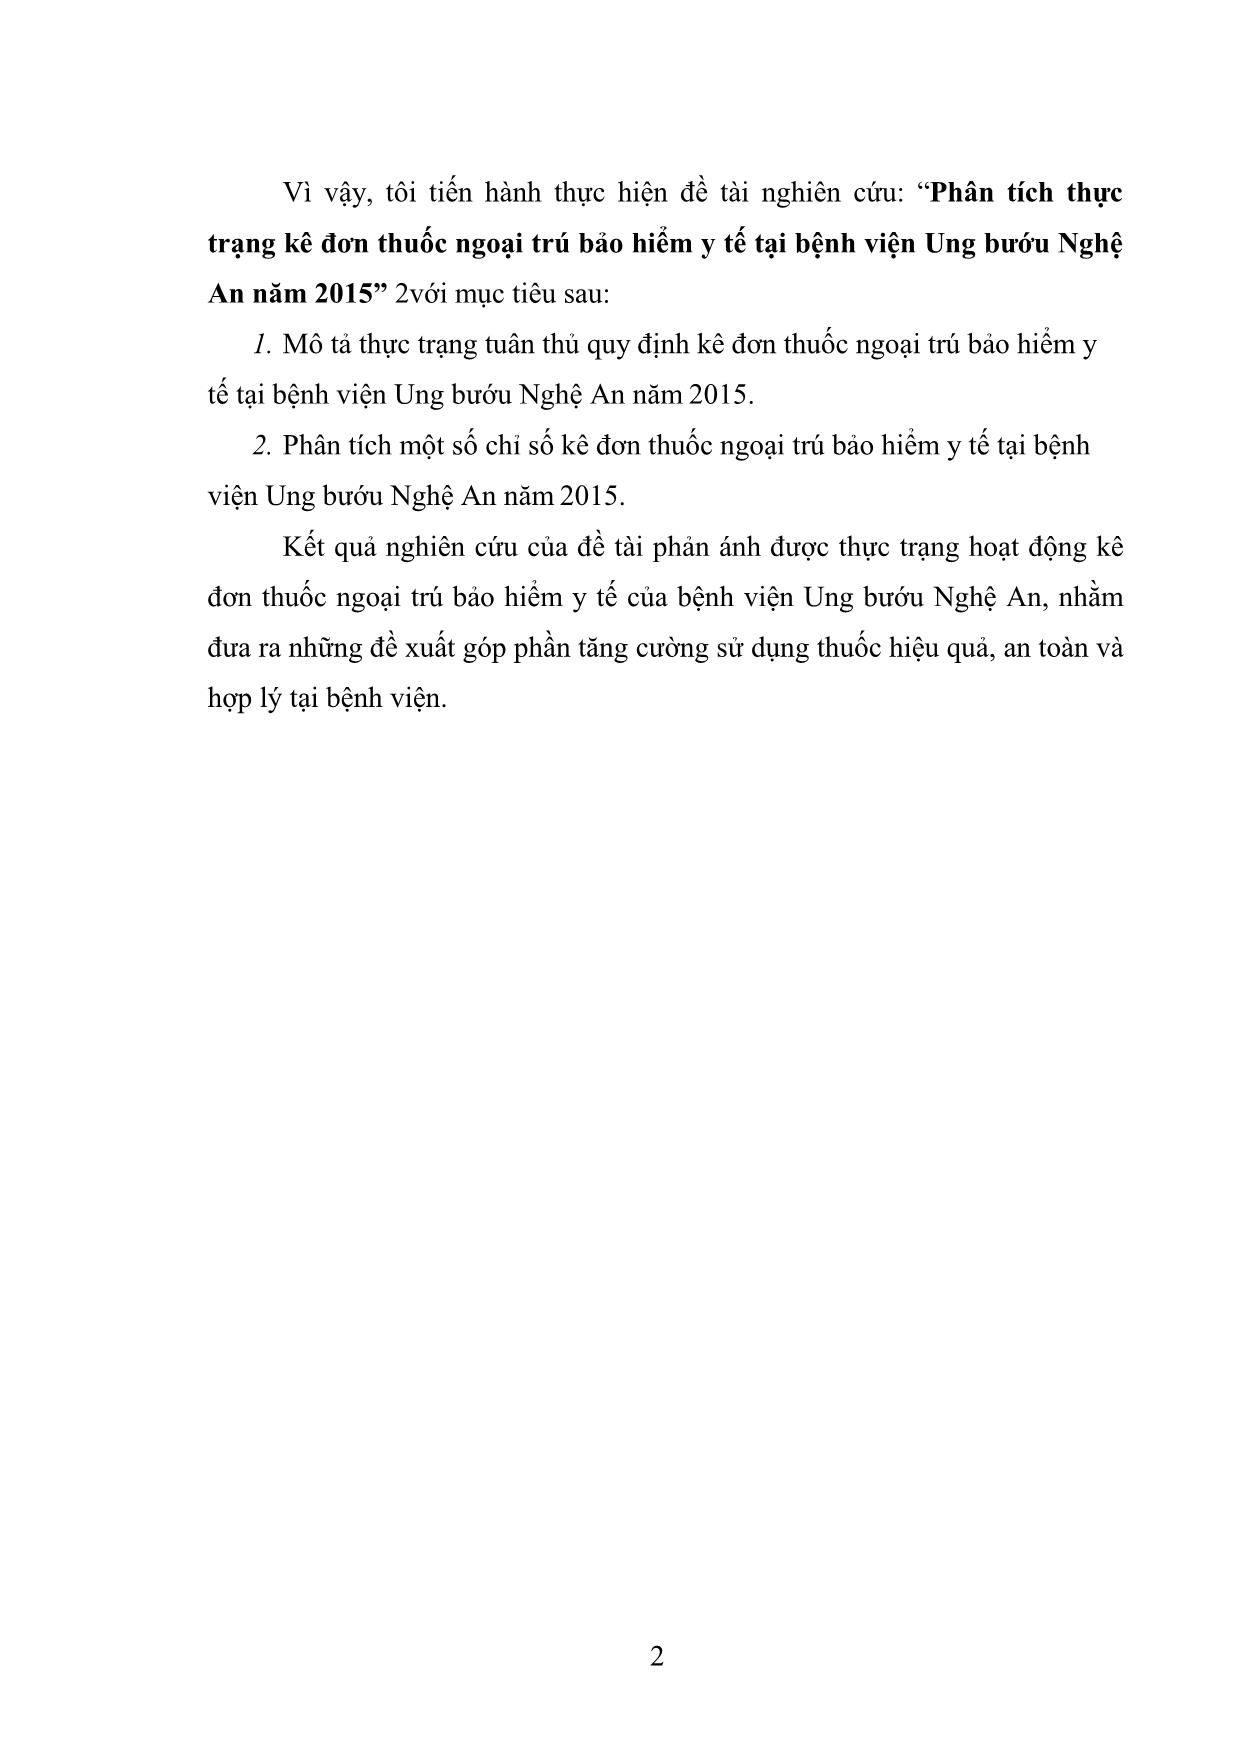 Luận án Phân tích thực trạng kê đơn thuốc ngoại trú tại bệnh viện ung bướu Nghệ an năm 2015 trang 10